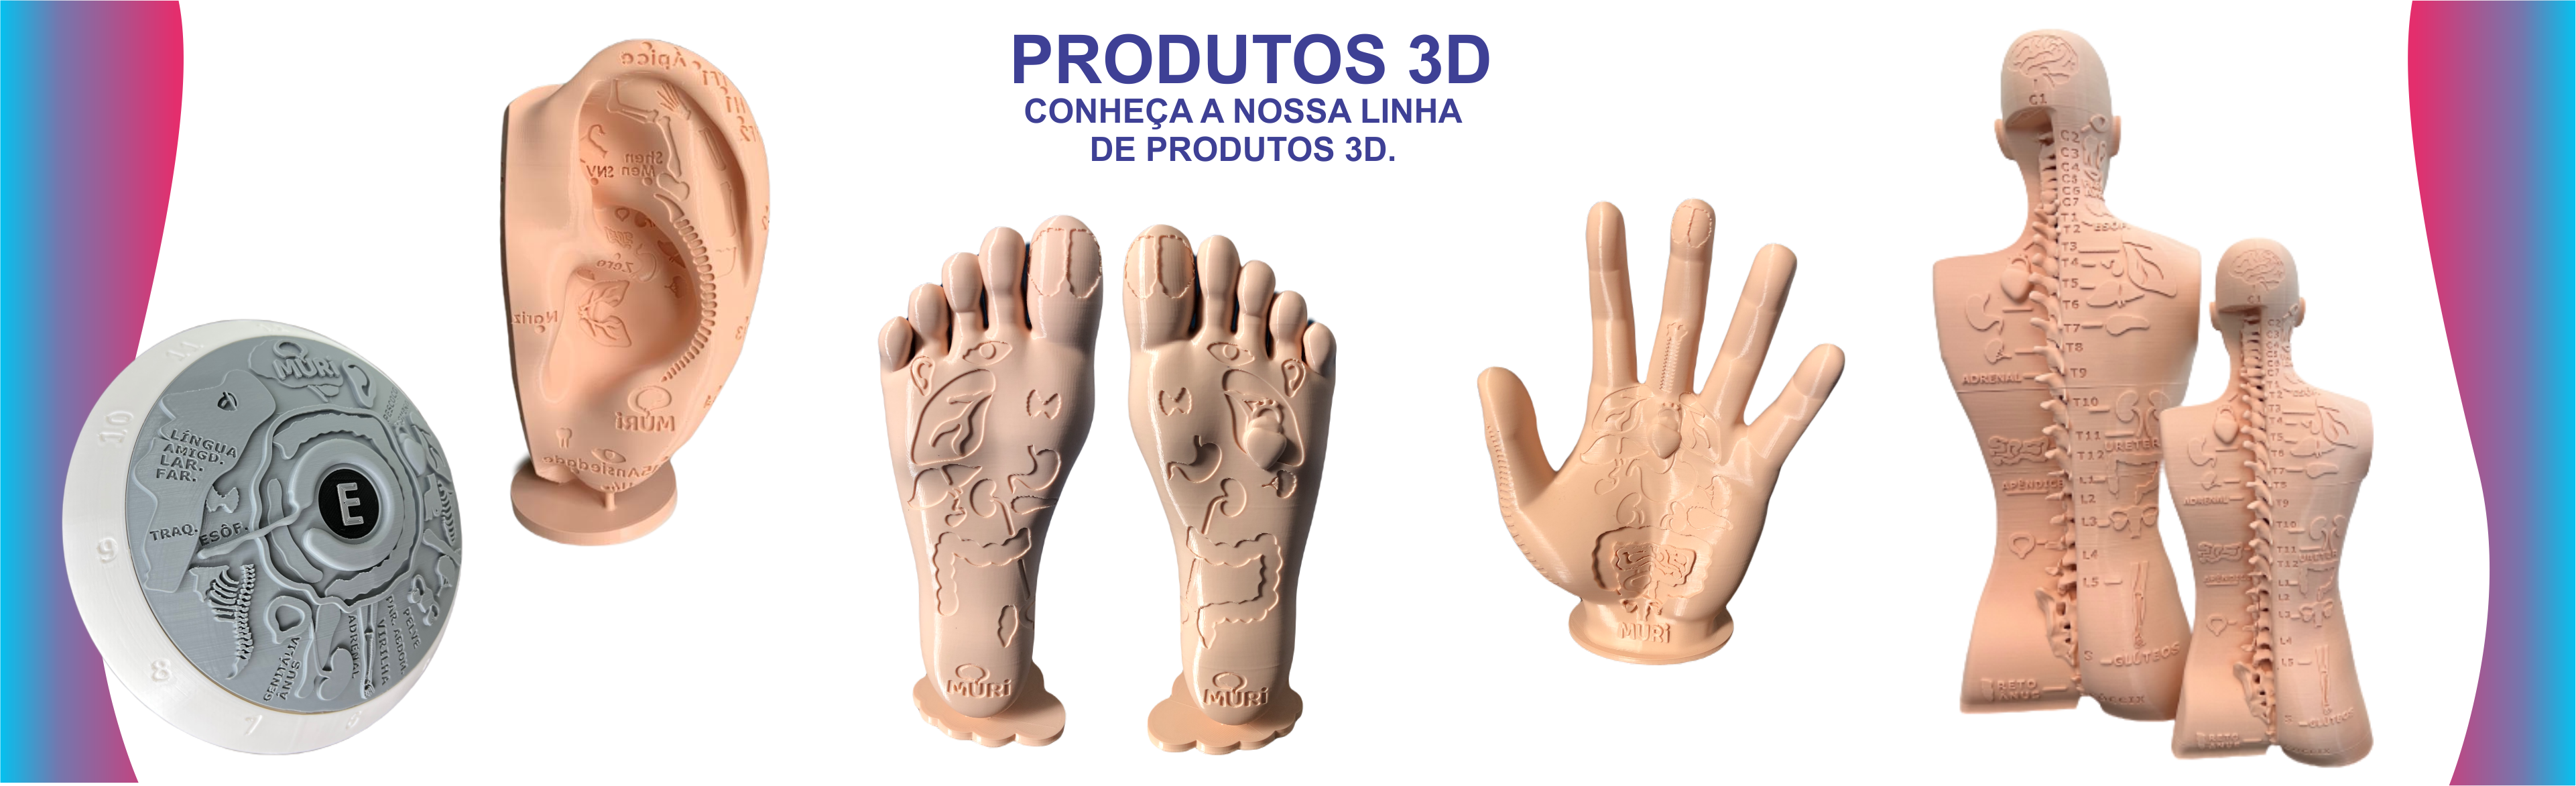 NOVIDADE: PRODUTOS 3D COM PRINCIPAIS ÓRGÃO EM RELEVO